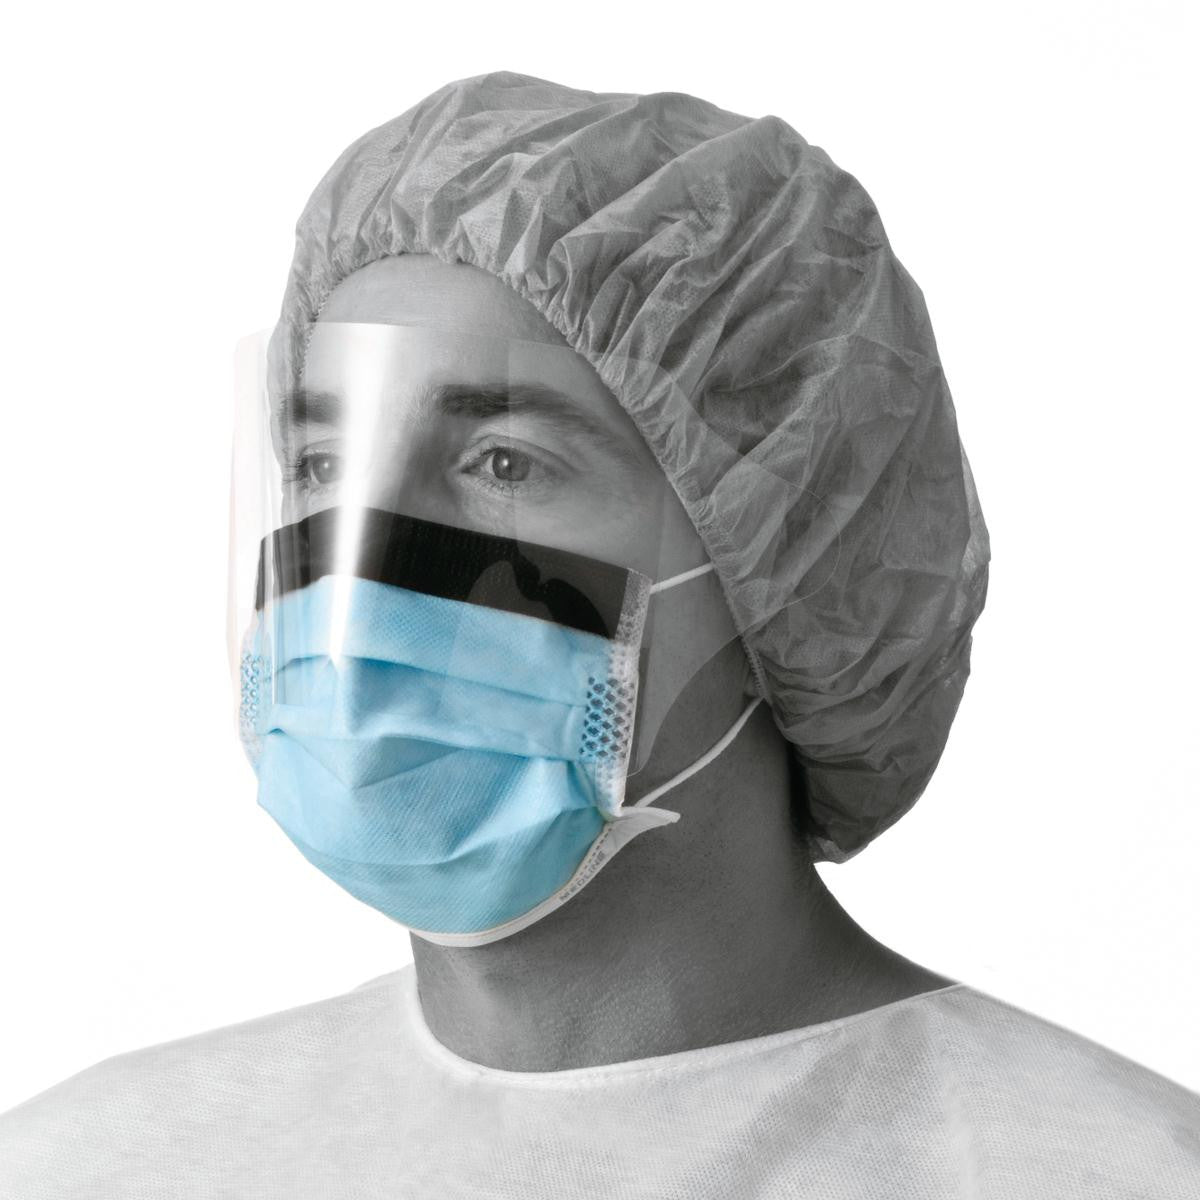 Где купить медицинских масок. Маска медицинская хирургическая. Маска хирургическая с защитным экраном. Маска хирургическая одноразовая. Хирургическая маска для лица.